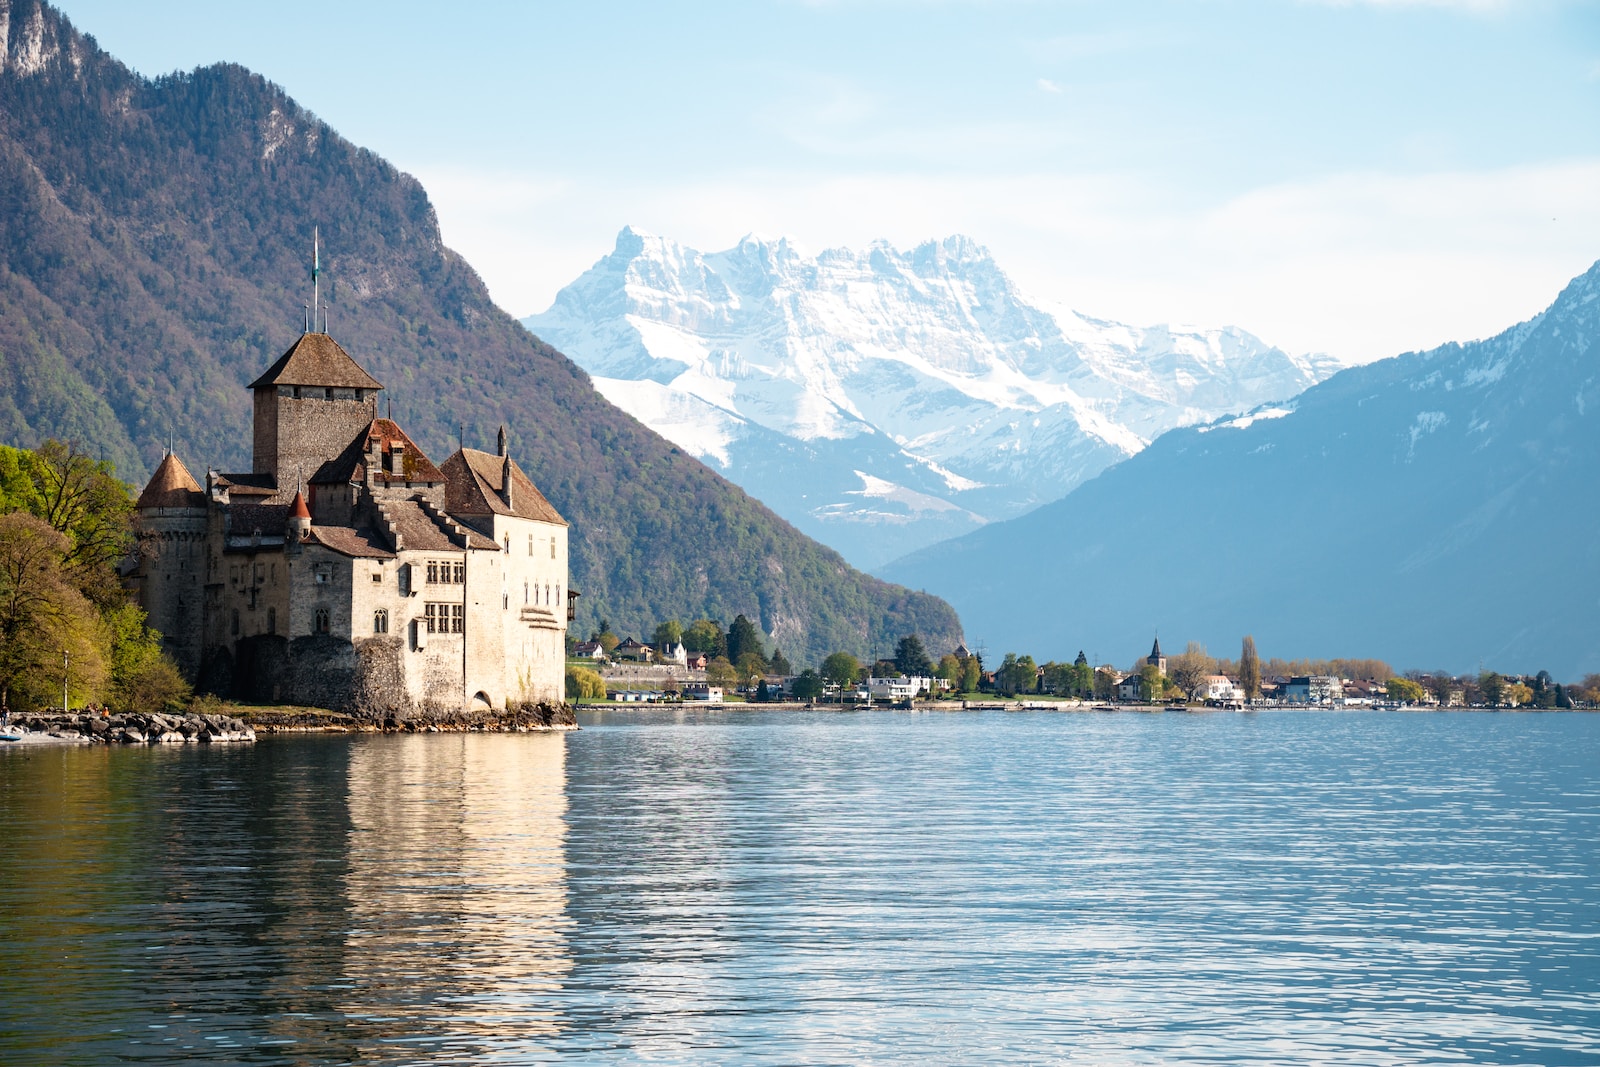 Louer une voiture pour les Vacances en Suisse